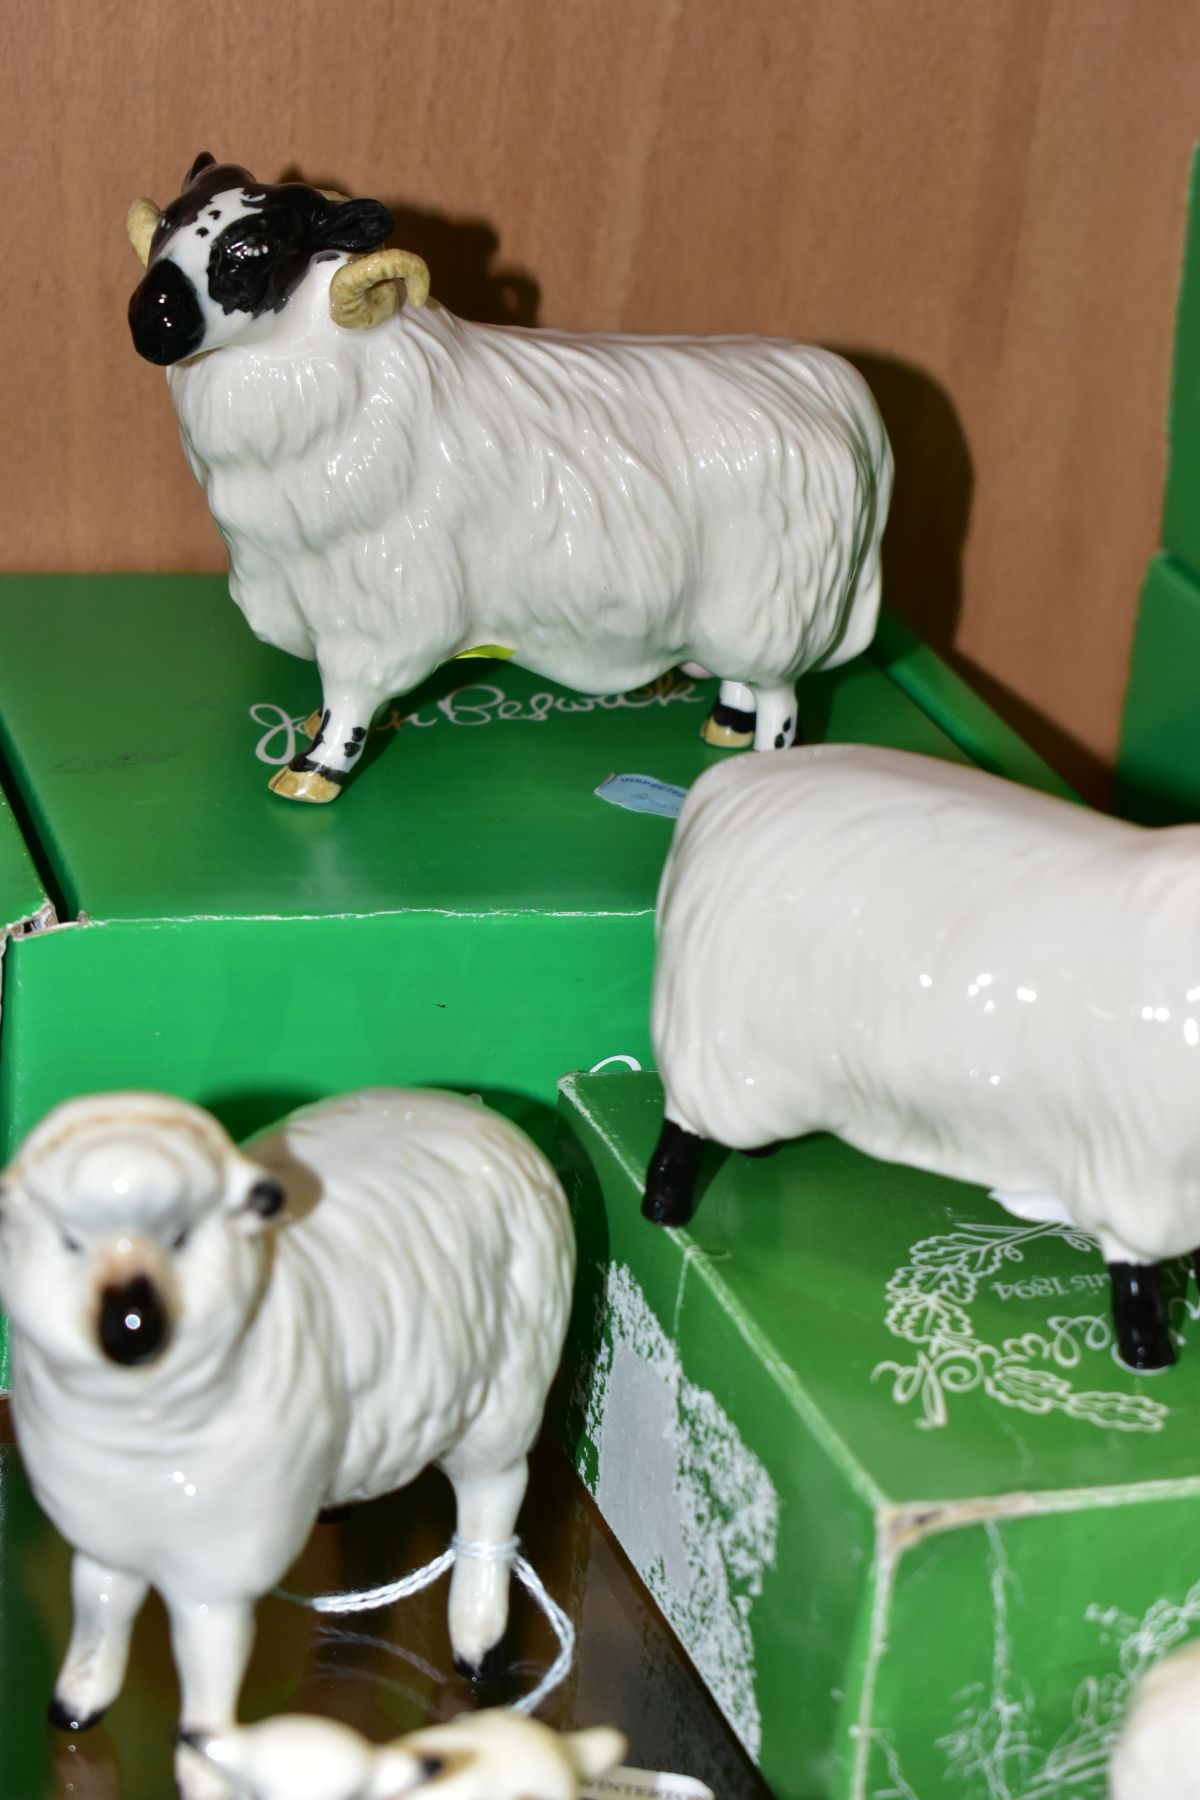 SIX BESWICK SHEEP, comprising sheep No 935, two lambs No 937 and 938, boxed Black Faced Sheep No - Image 4 of 5